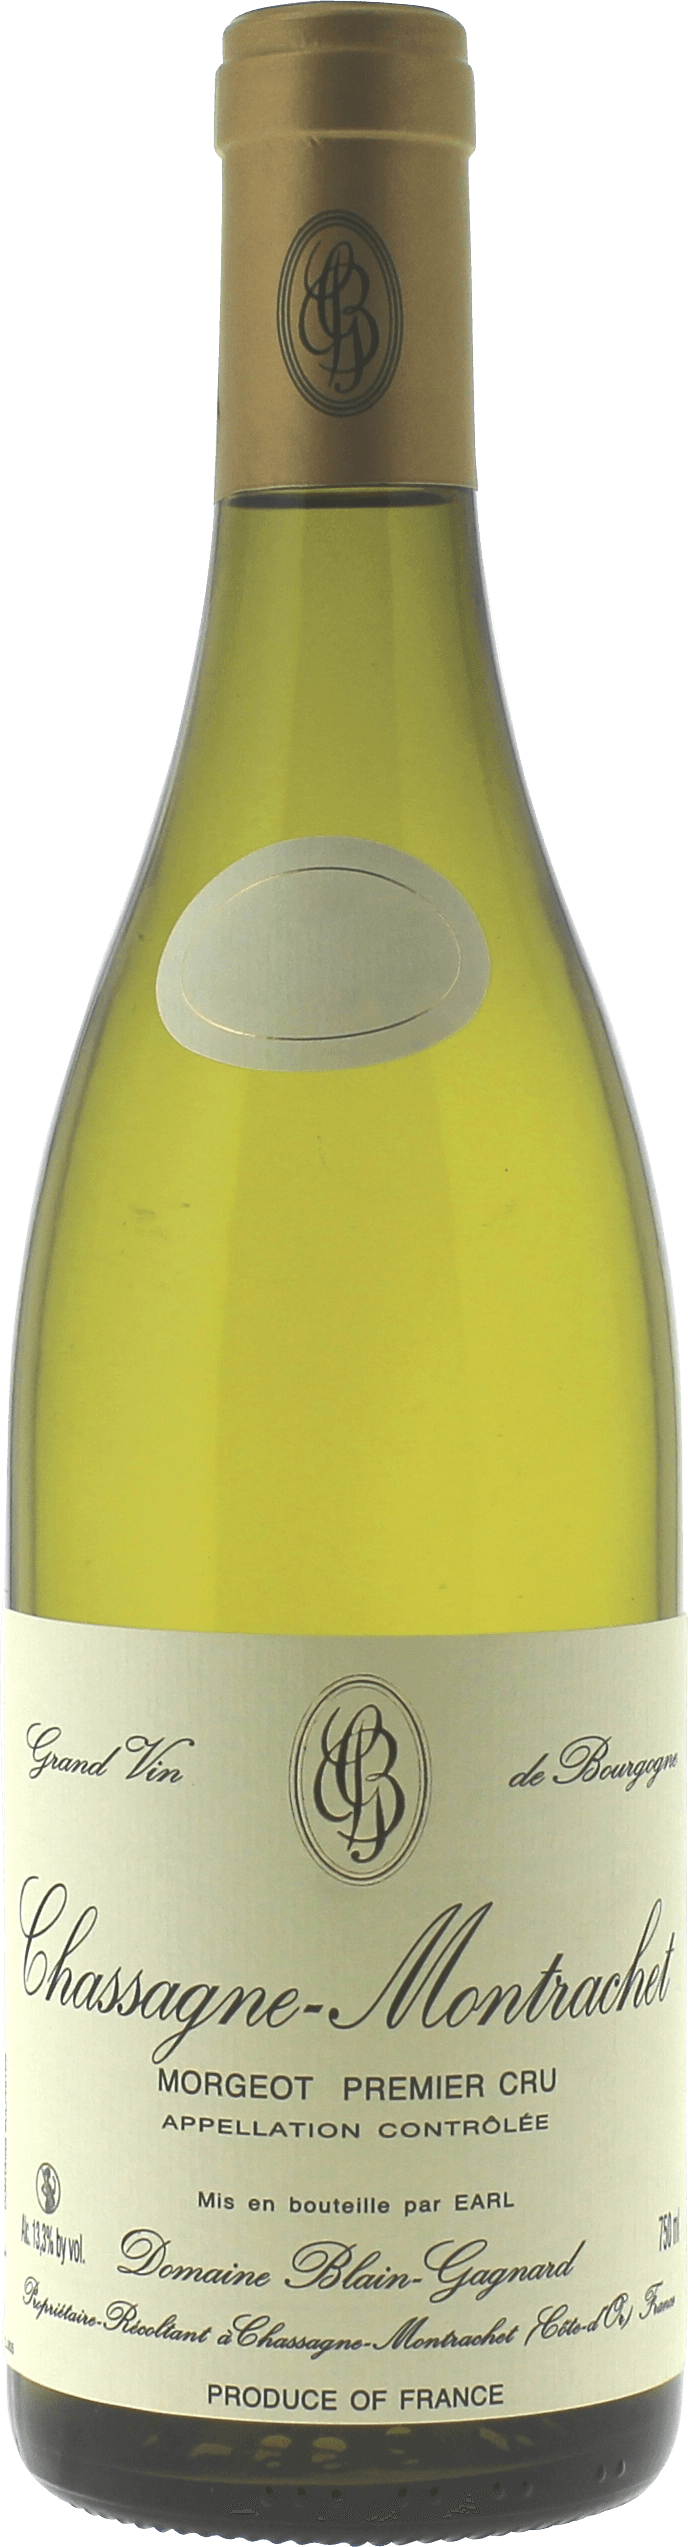 Chassagne montrachet 1er cru morgeot 2017 Domaine BLAIN GAGNARD, Bourgogne blanc